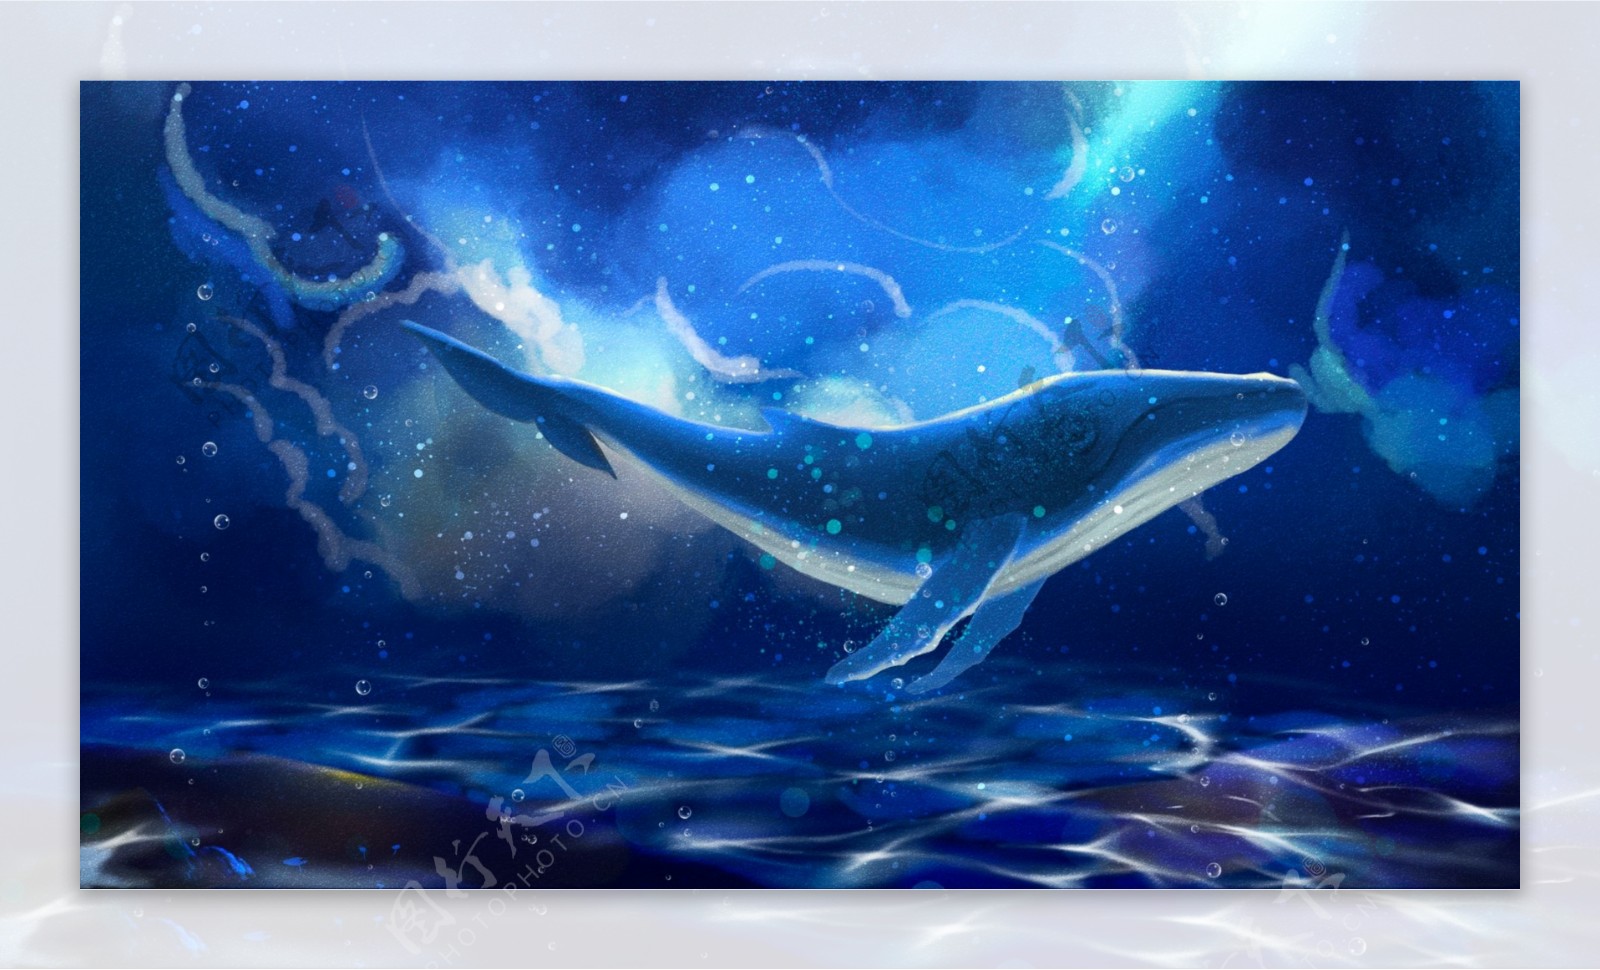 唯美手绘梦幻大海与鲸治愈系梦游仙境插画